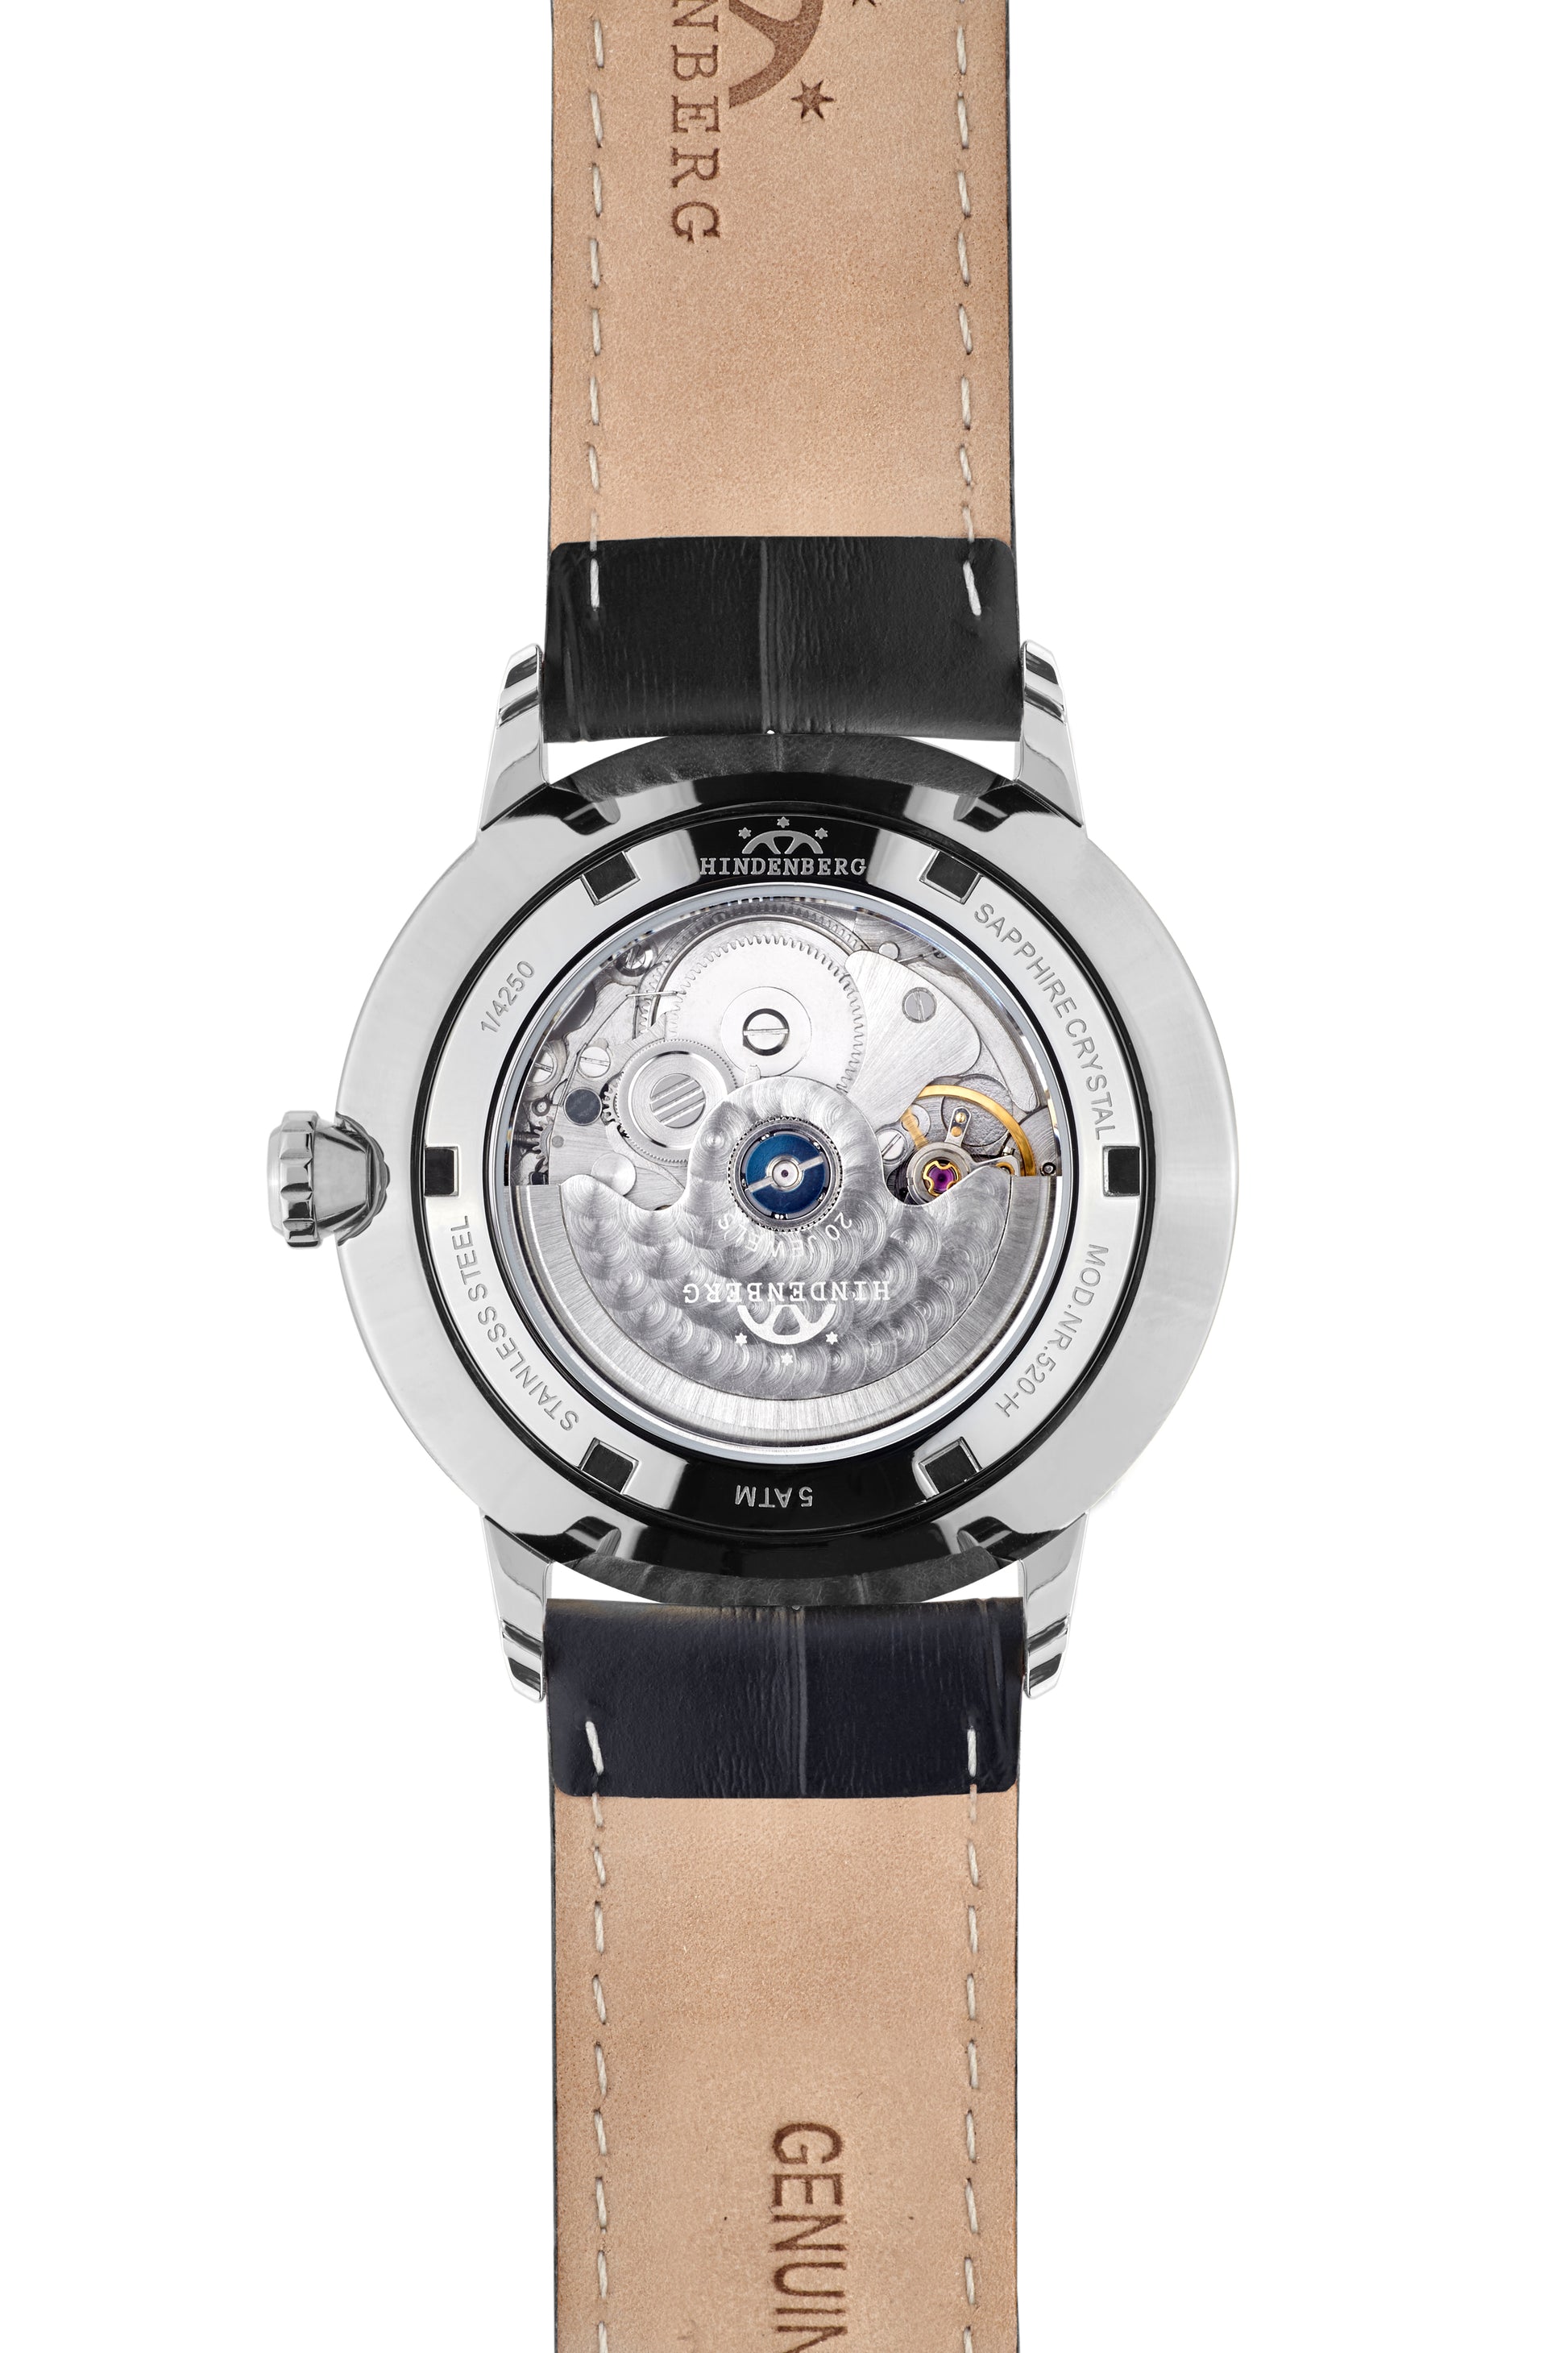 Automatic watches — Delta Dart — Hindenberg — steel black